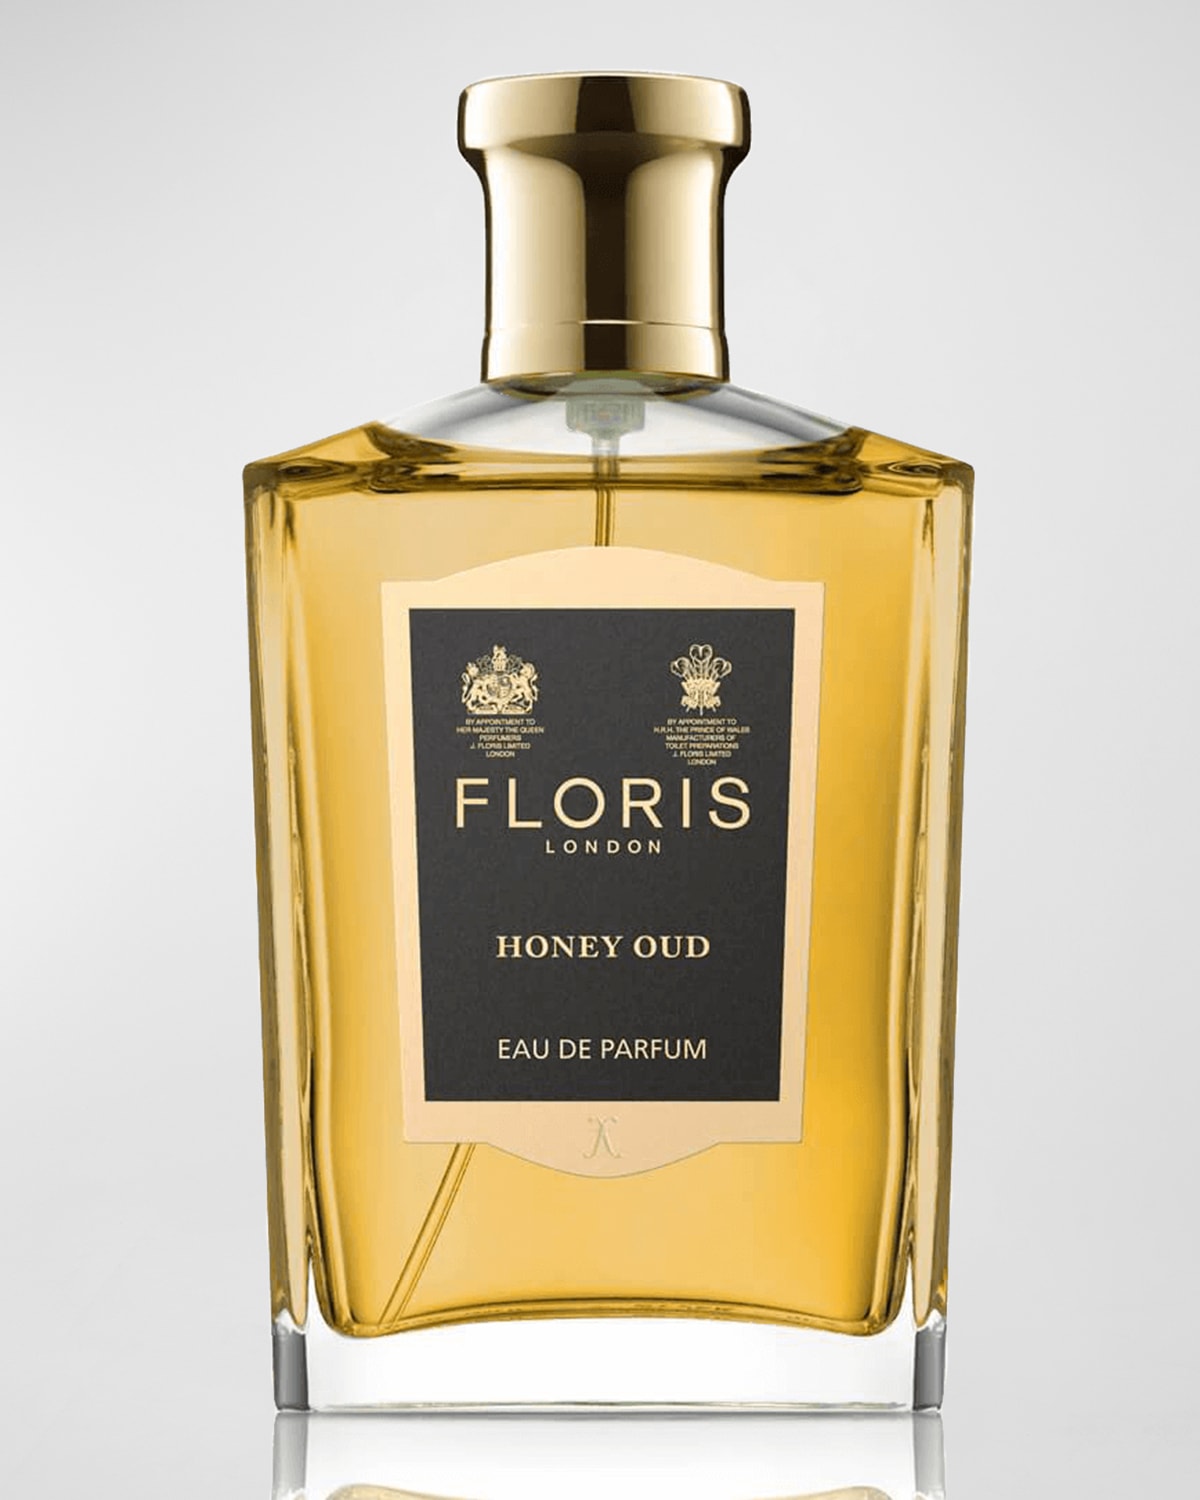 Floris London Honey Oud Eau de Parfum, 3.4 oz.